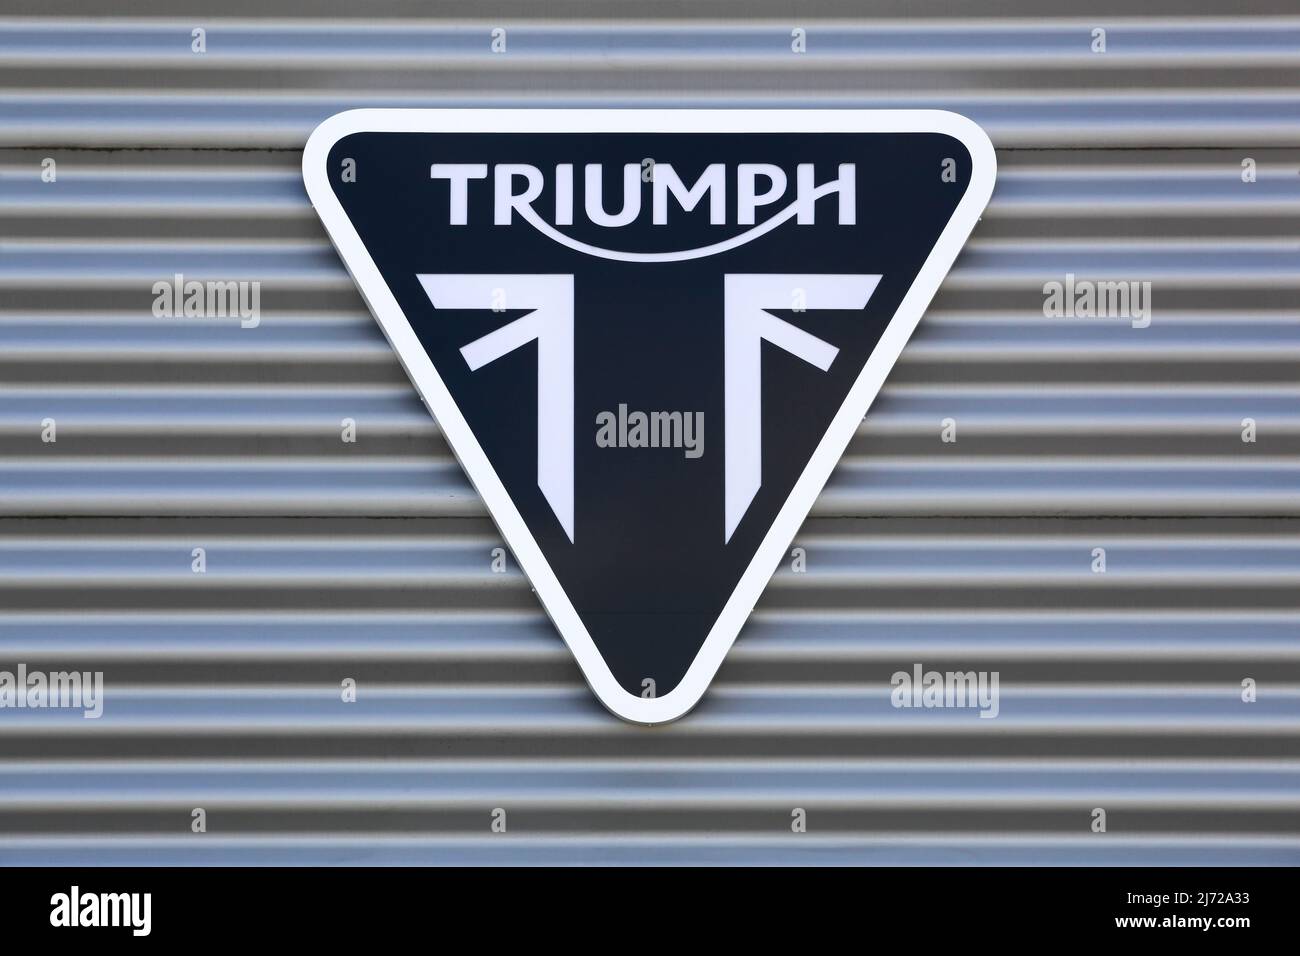 Dardilly, France - 6 septembre 2020 : logo du triomphe sur un mur. Triumph Motorcycles est le plus grand fabricant de motos britannique Banque D'Images